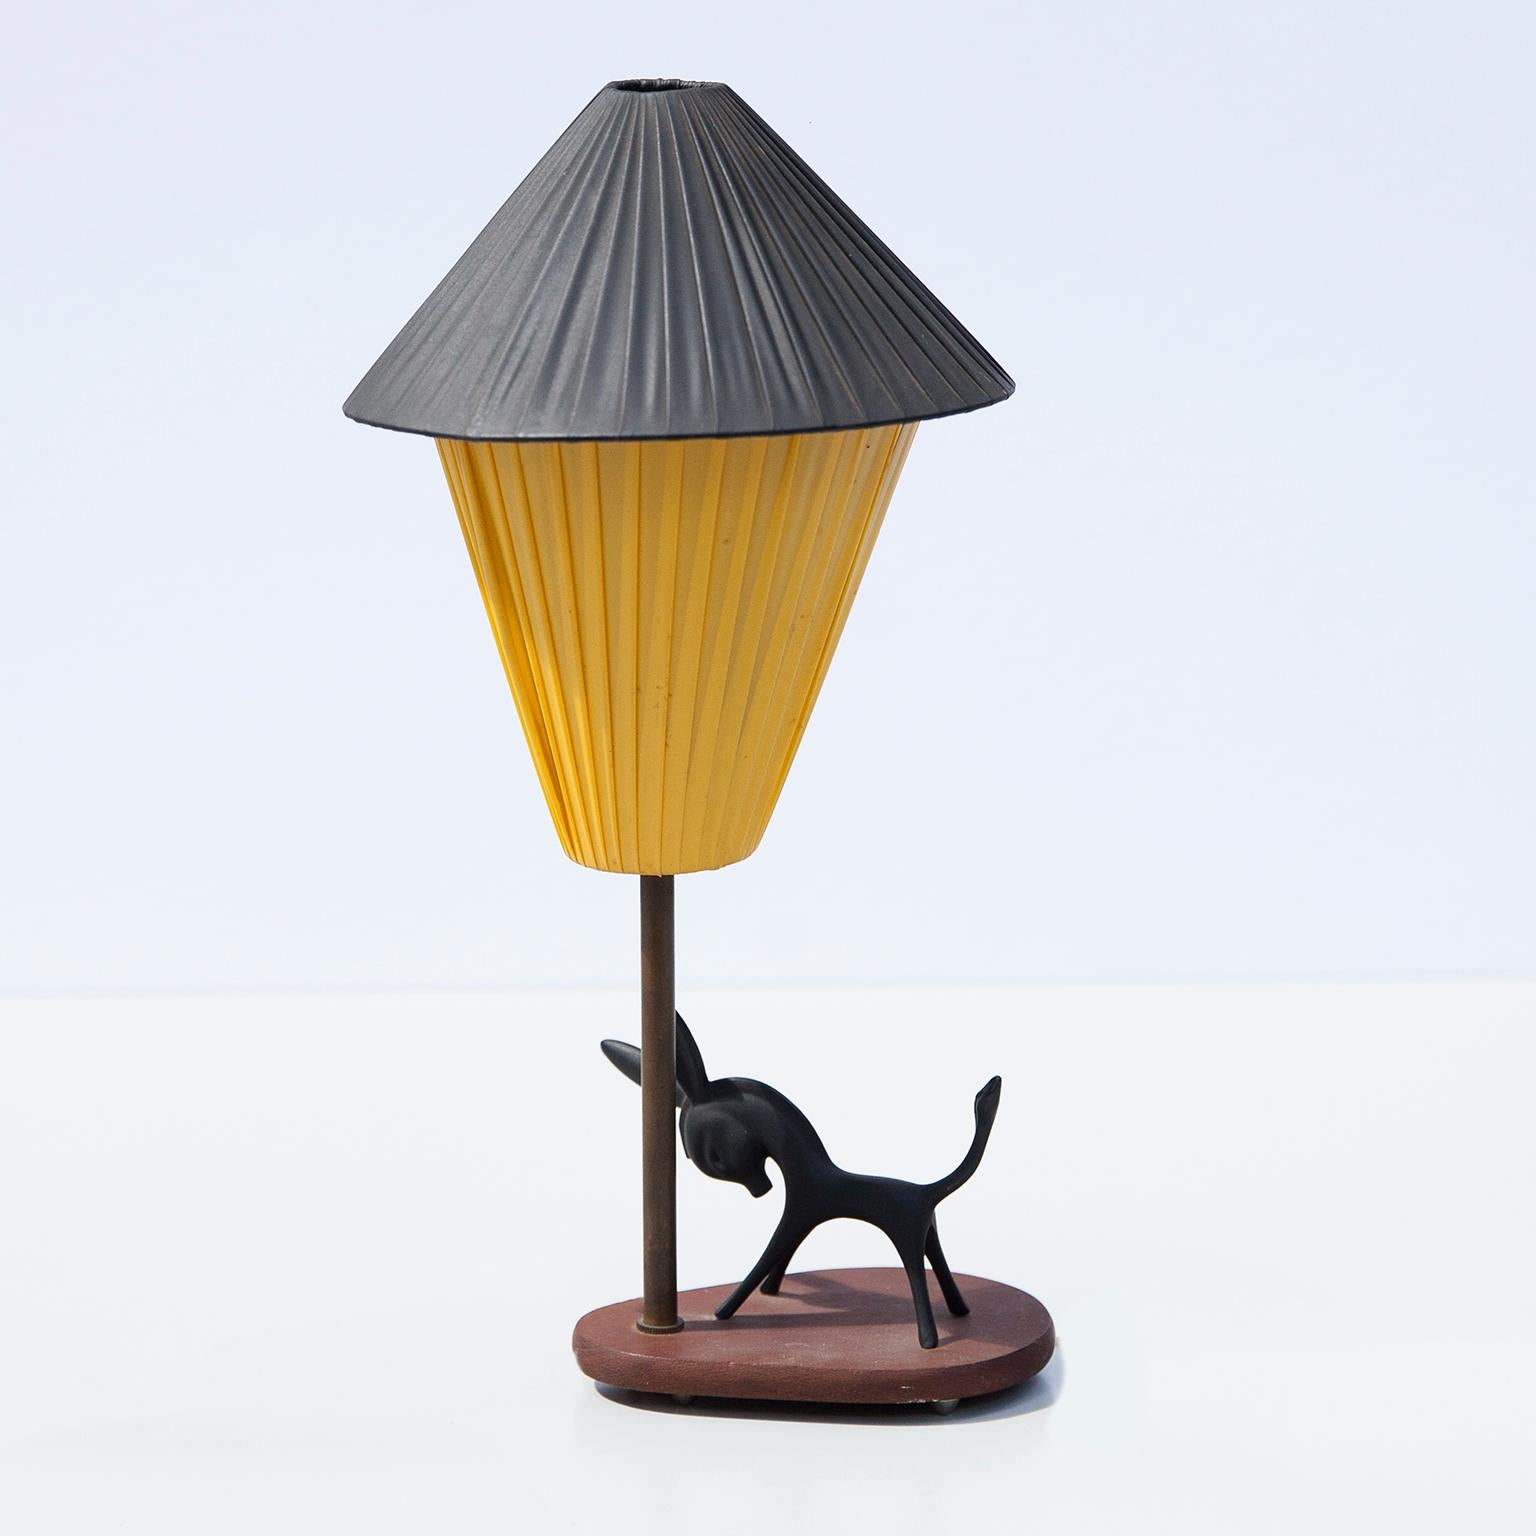 Lampe de table en forme d'âne conçue par Walter Bosse et fabriquée par Hertha Baller, Autriche, Vienne, dans les années 1950. L'âne est réalisé en laiton noirci patiné et vieilli, posé sur une base en teck avec deux abat-jour originaux.

Cette